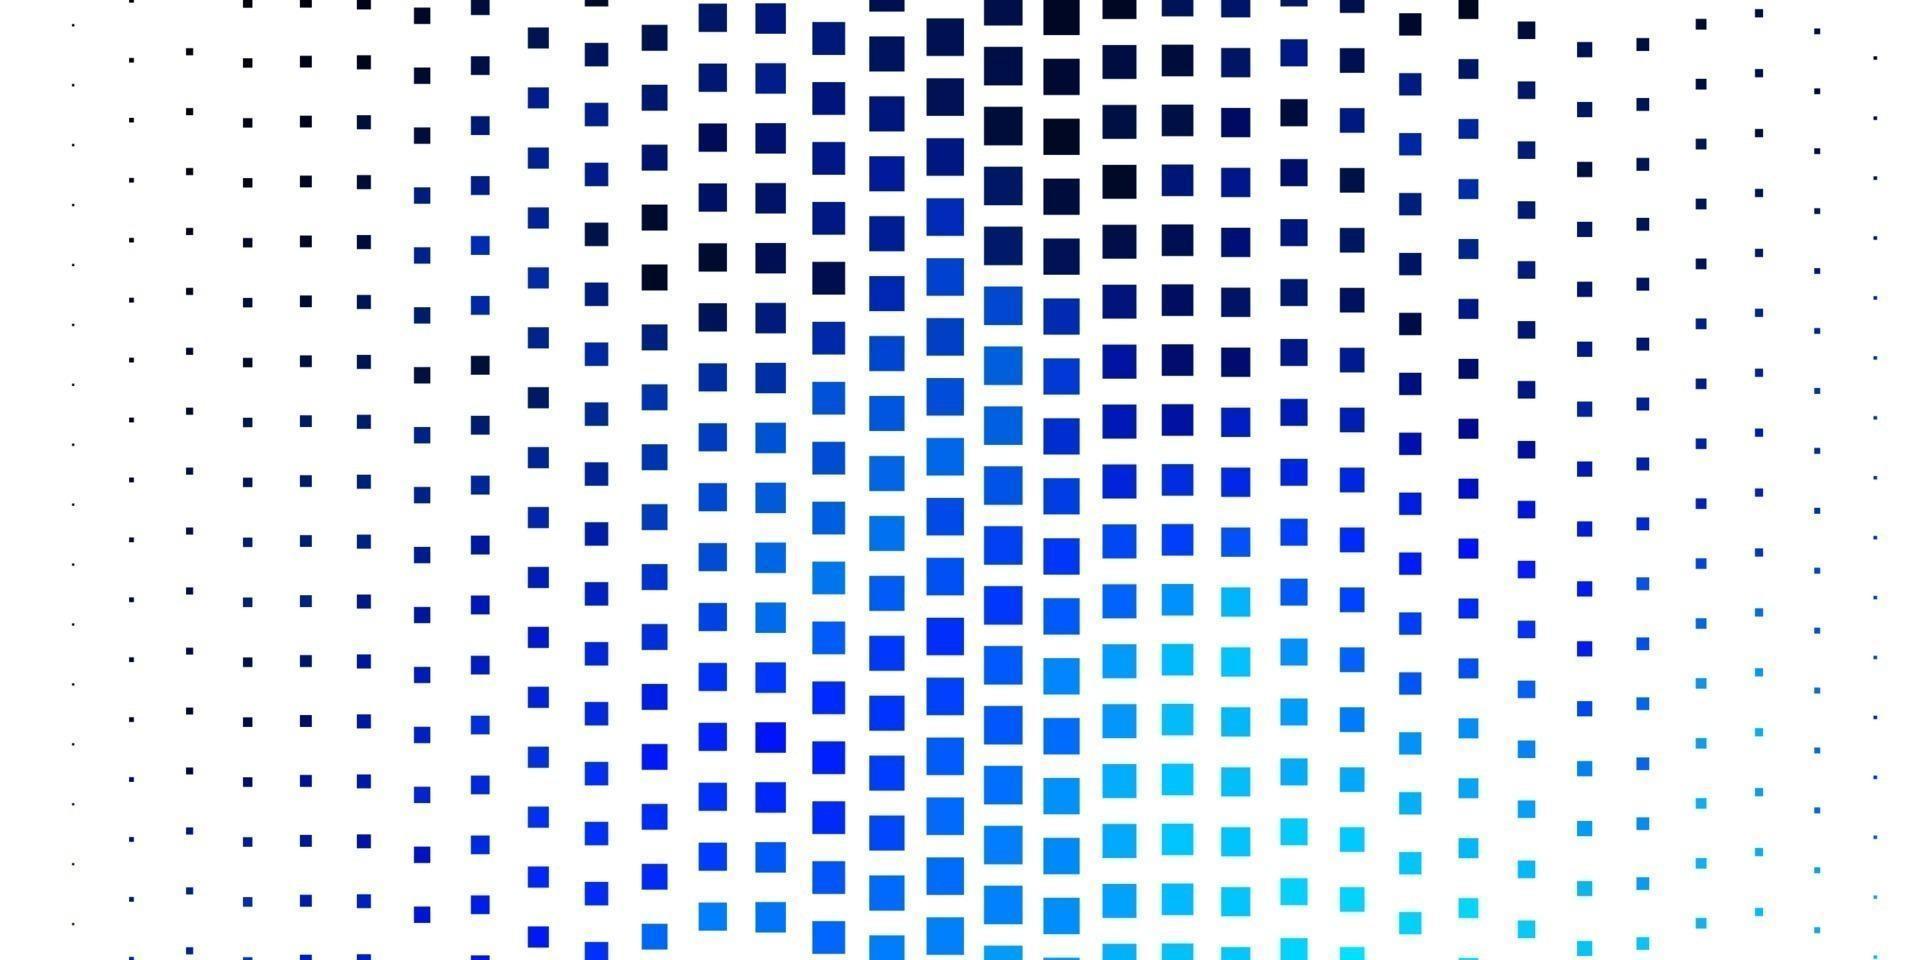 Fondo de vector azul claro en estilo poligonal.